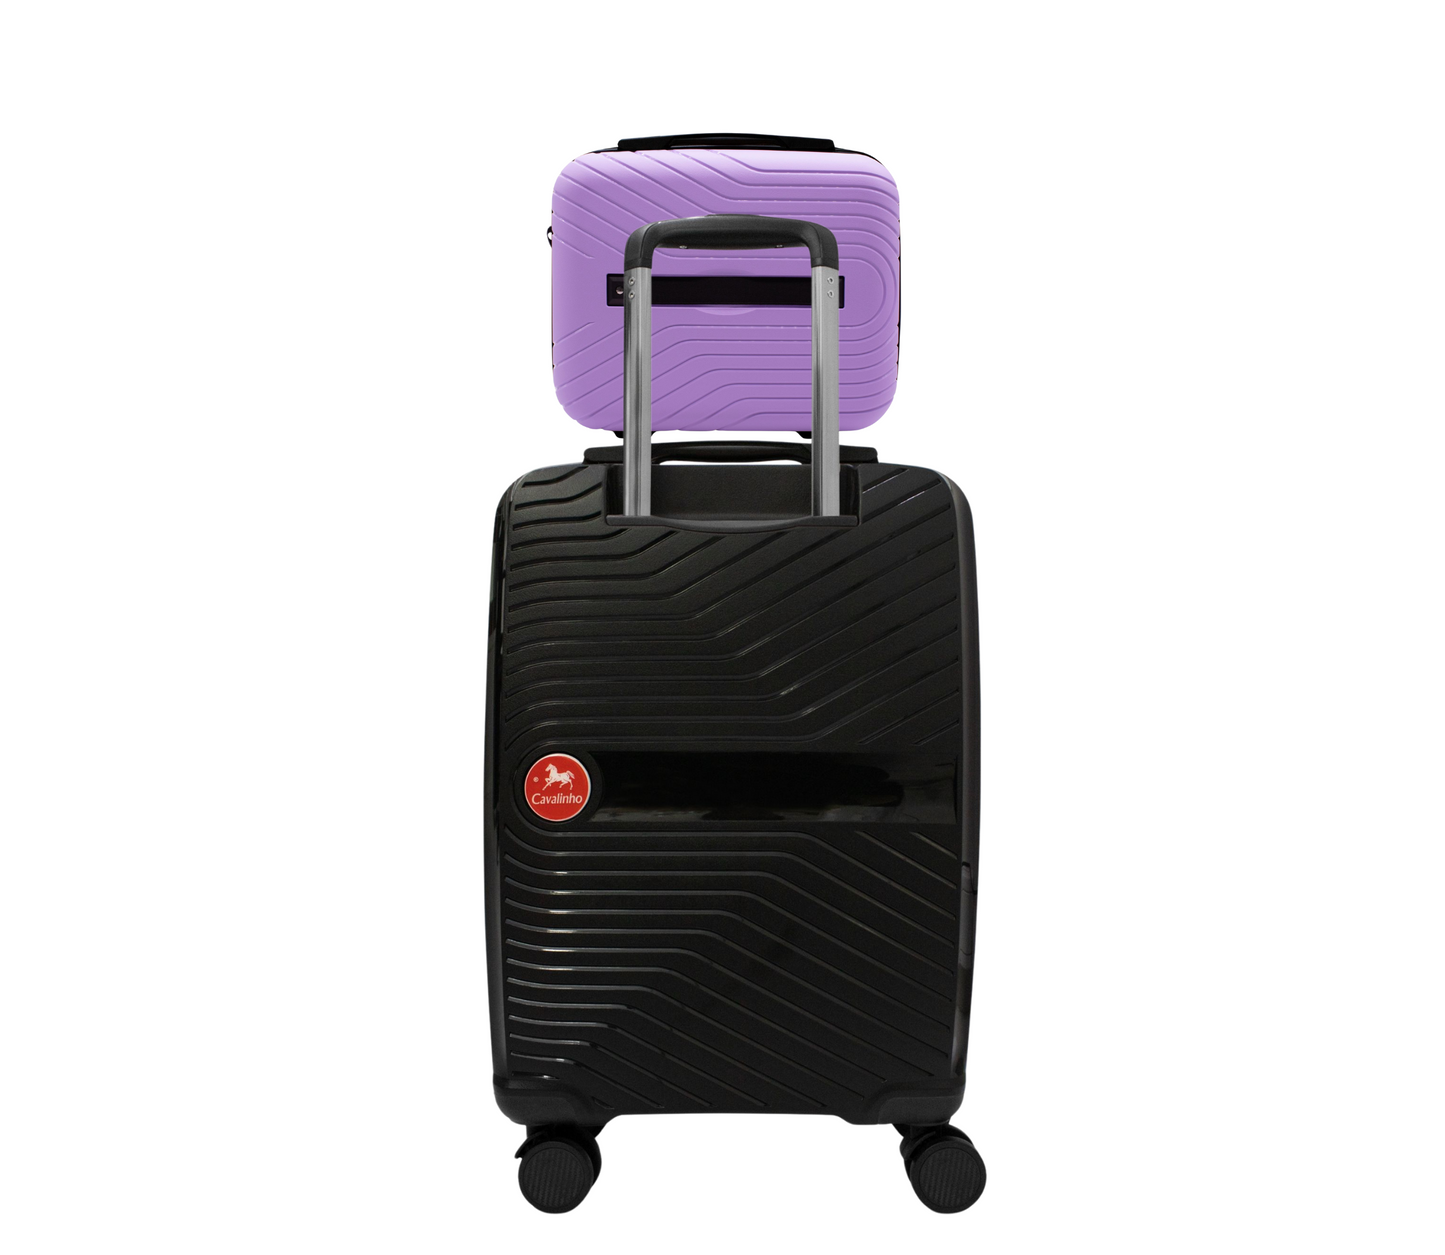 Cavalinho Canada & USA Colorful 2 Piece Luggage Set (15" & 19") - Lilac Black - 68020004.3901.S1519._2